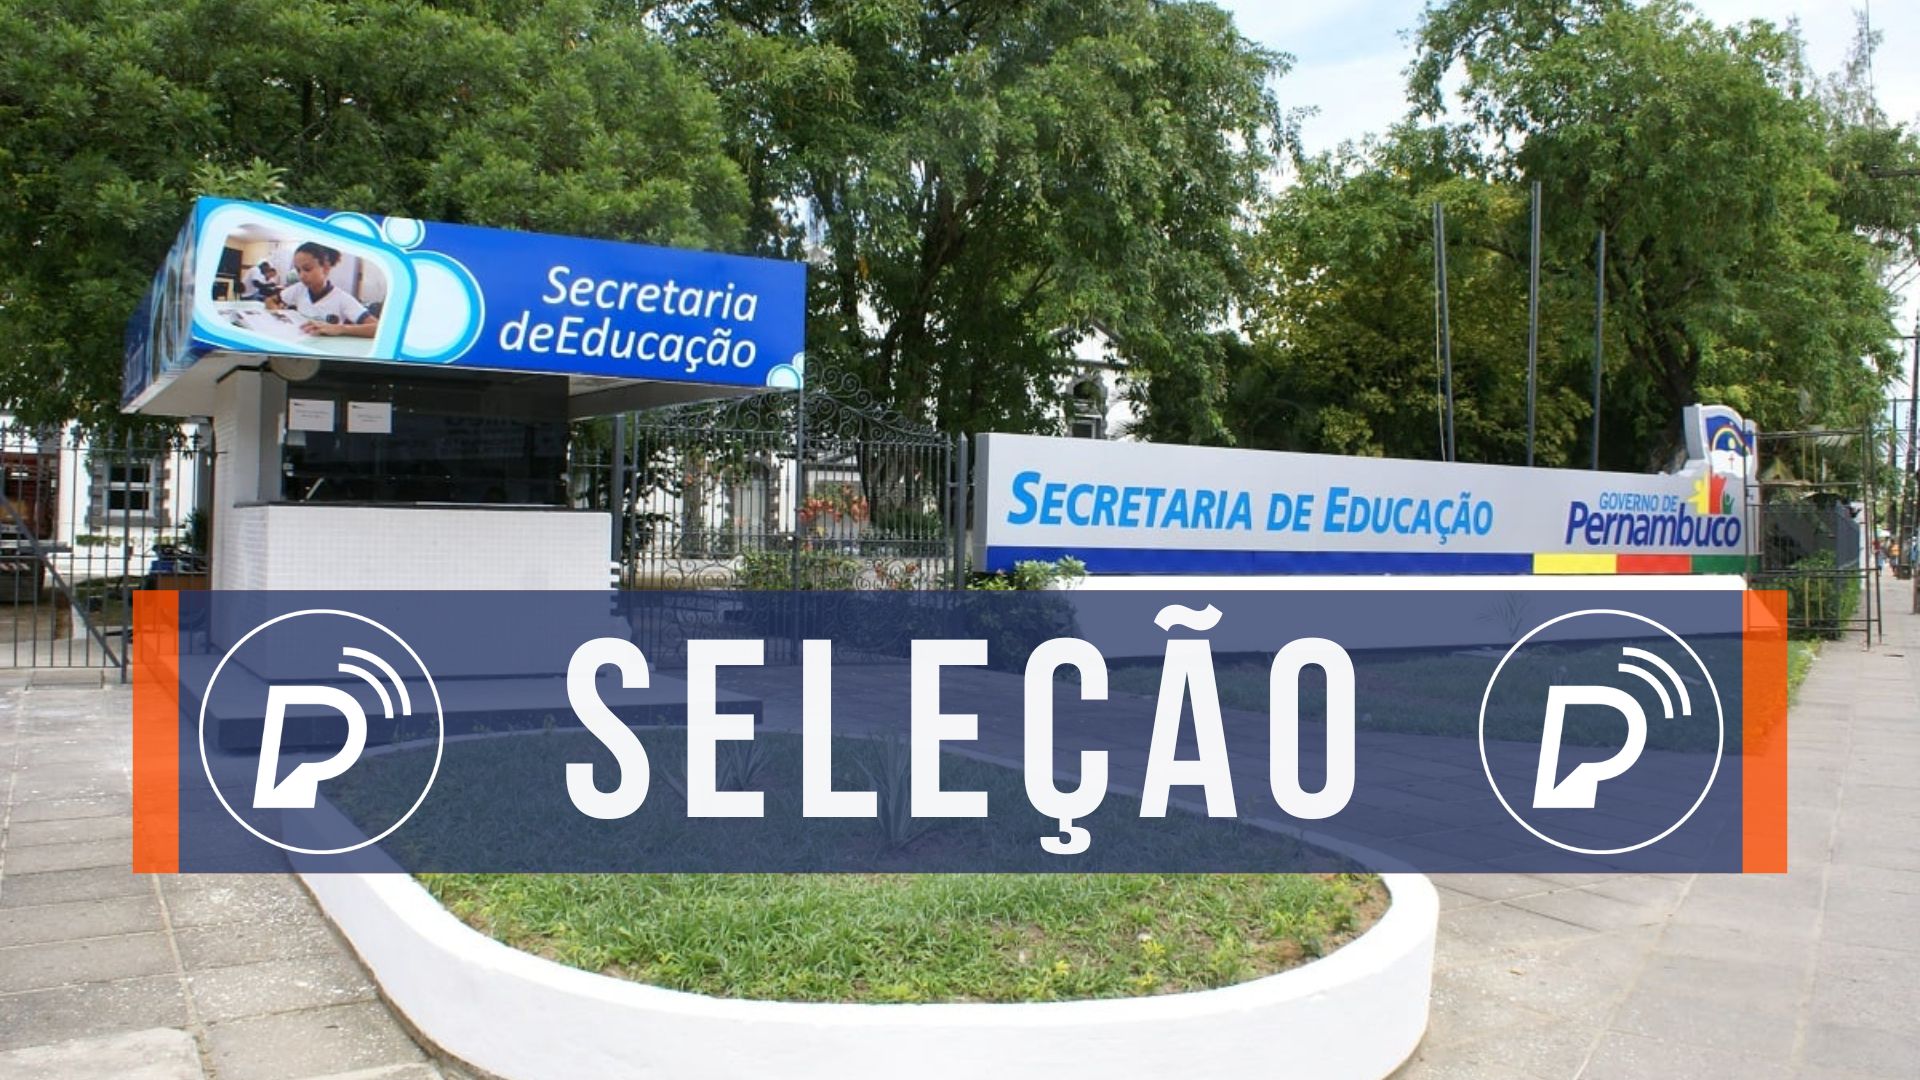 Secretaria de Educação de Pernambuco abre SELEÇÃO SIMPLIFICADA com 120 VAGAS; veja como se inscrever.